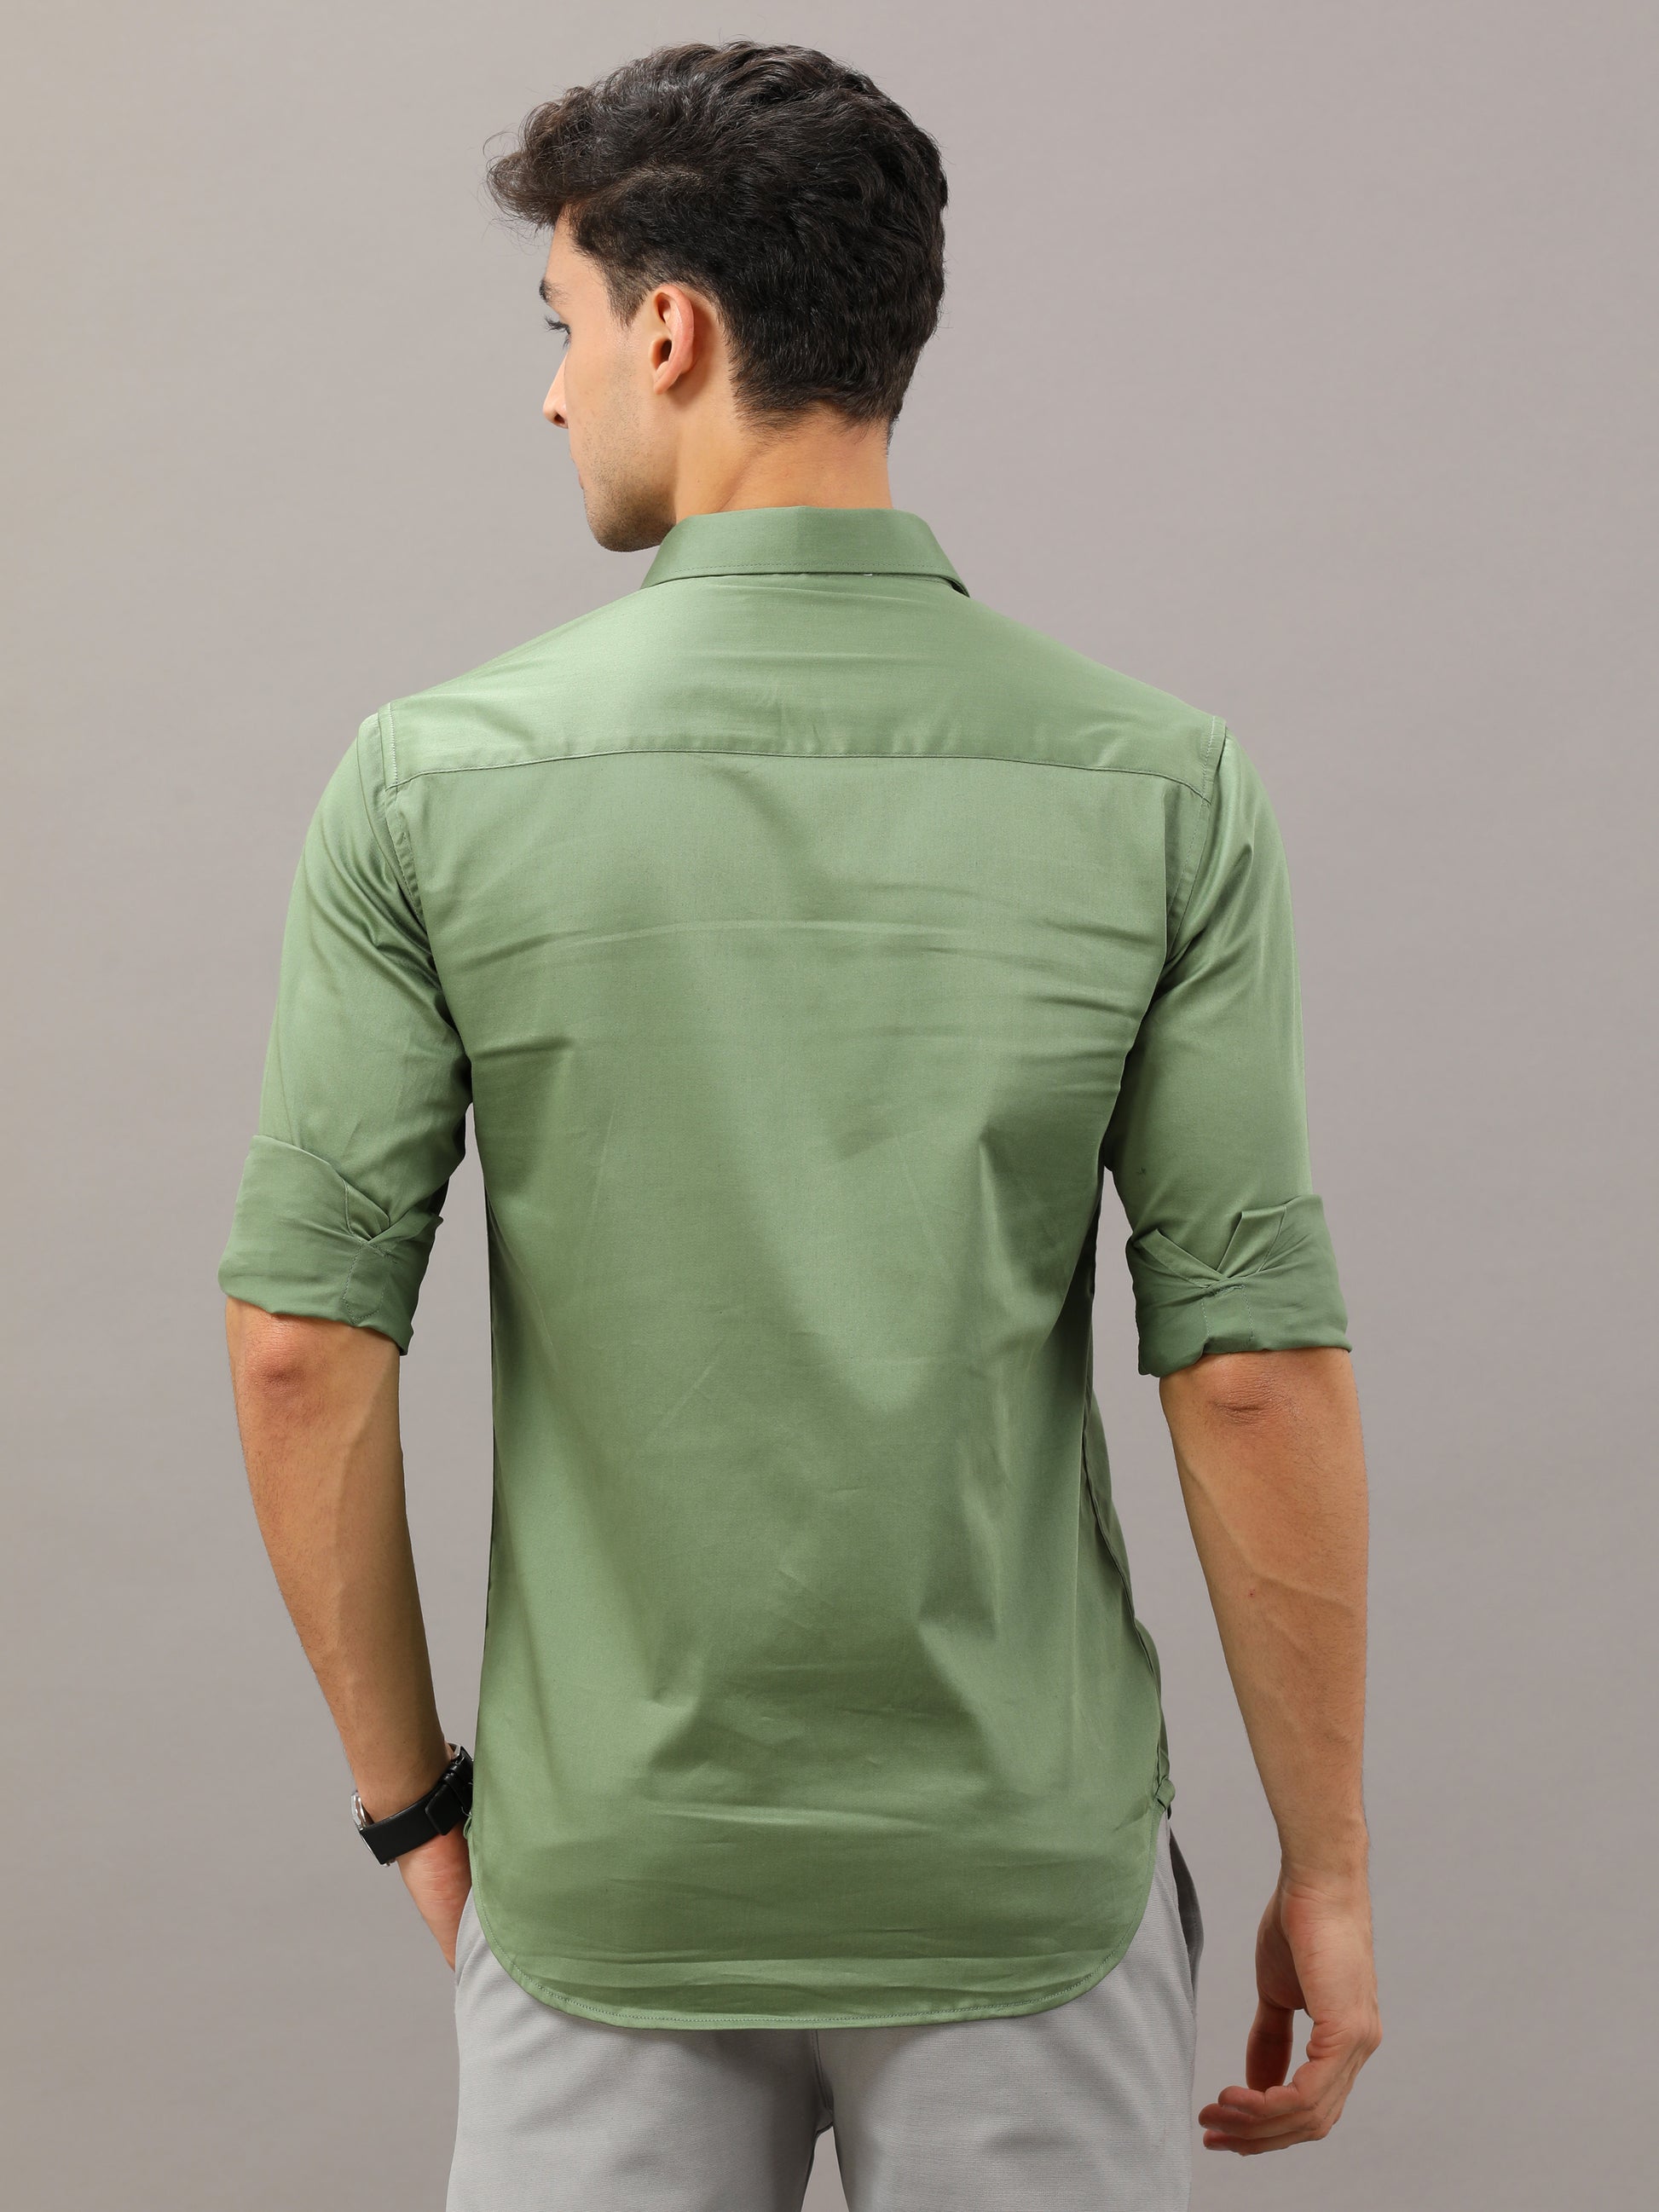 Plain Green shirt full sleeve